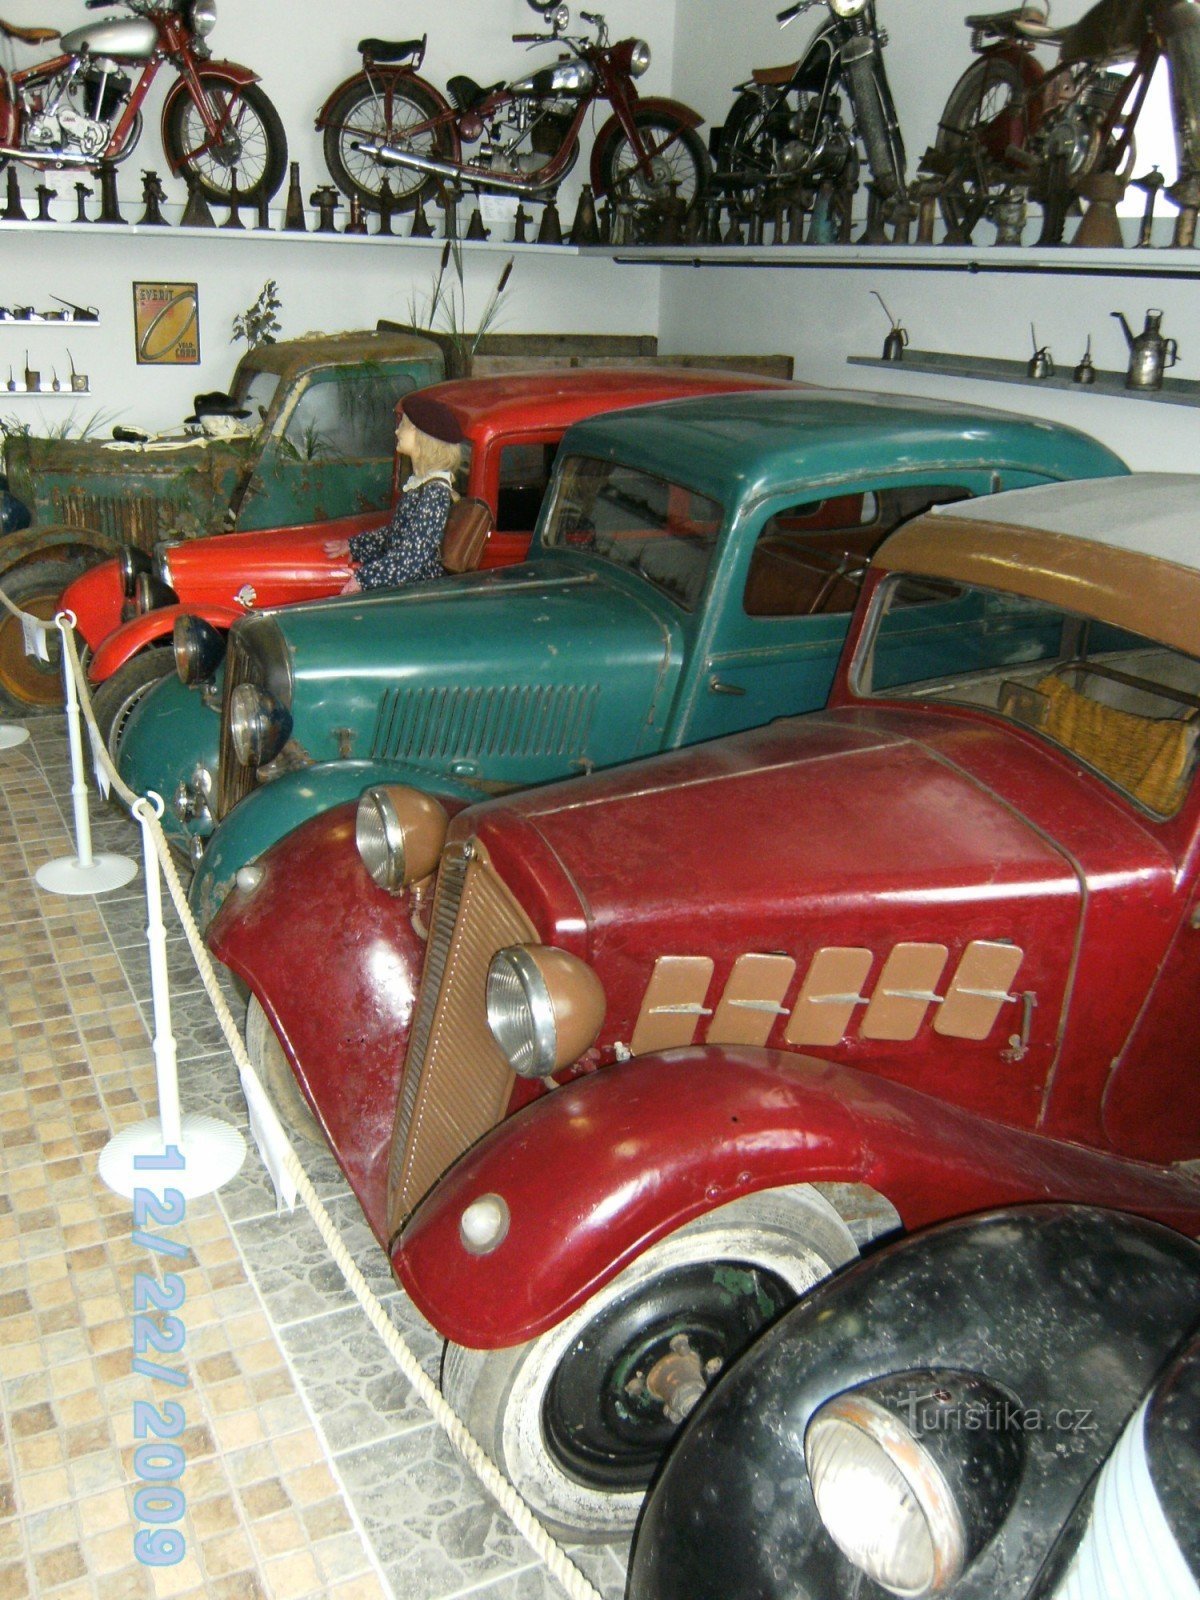 ズノイモ - 自動車博物館